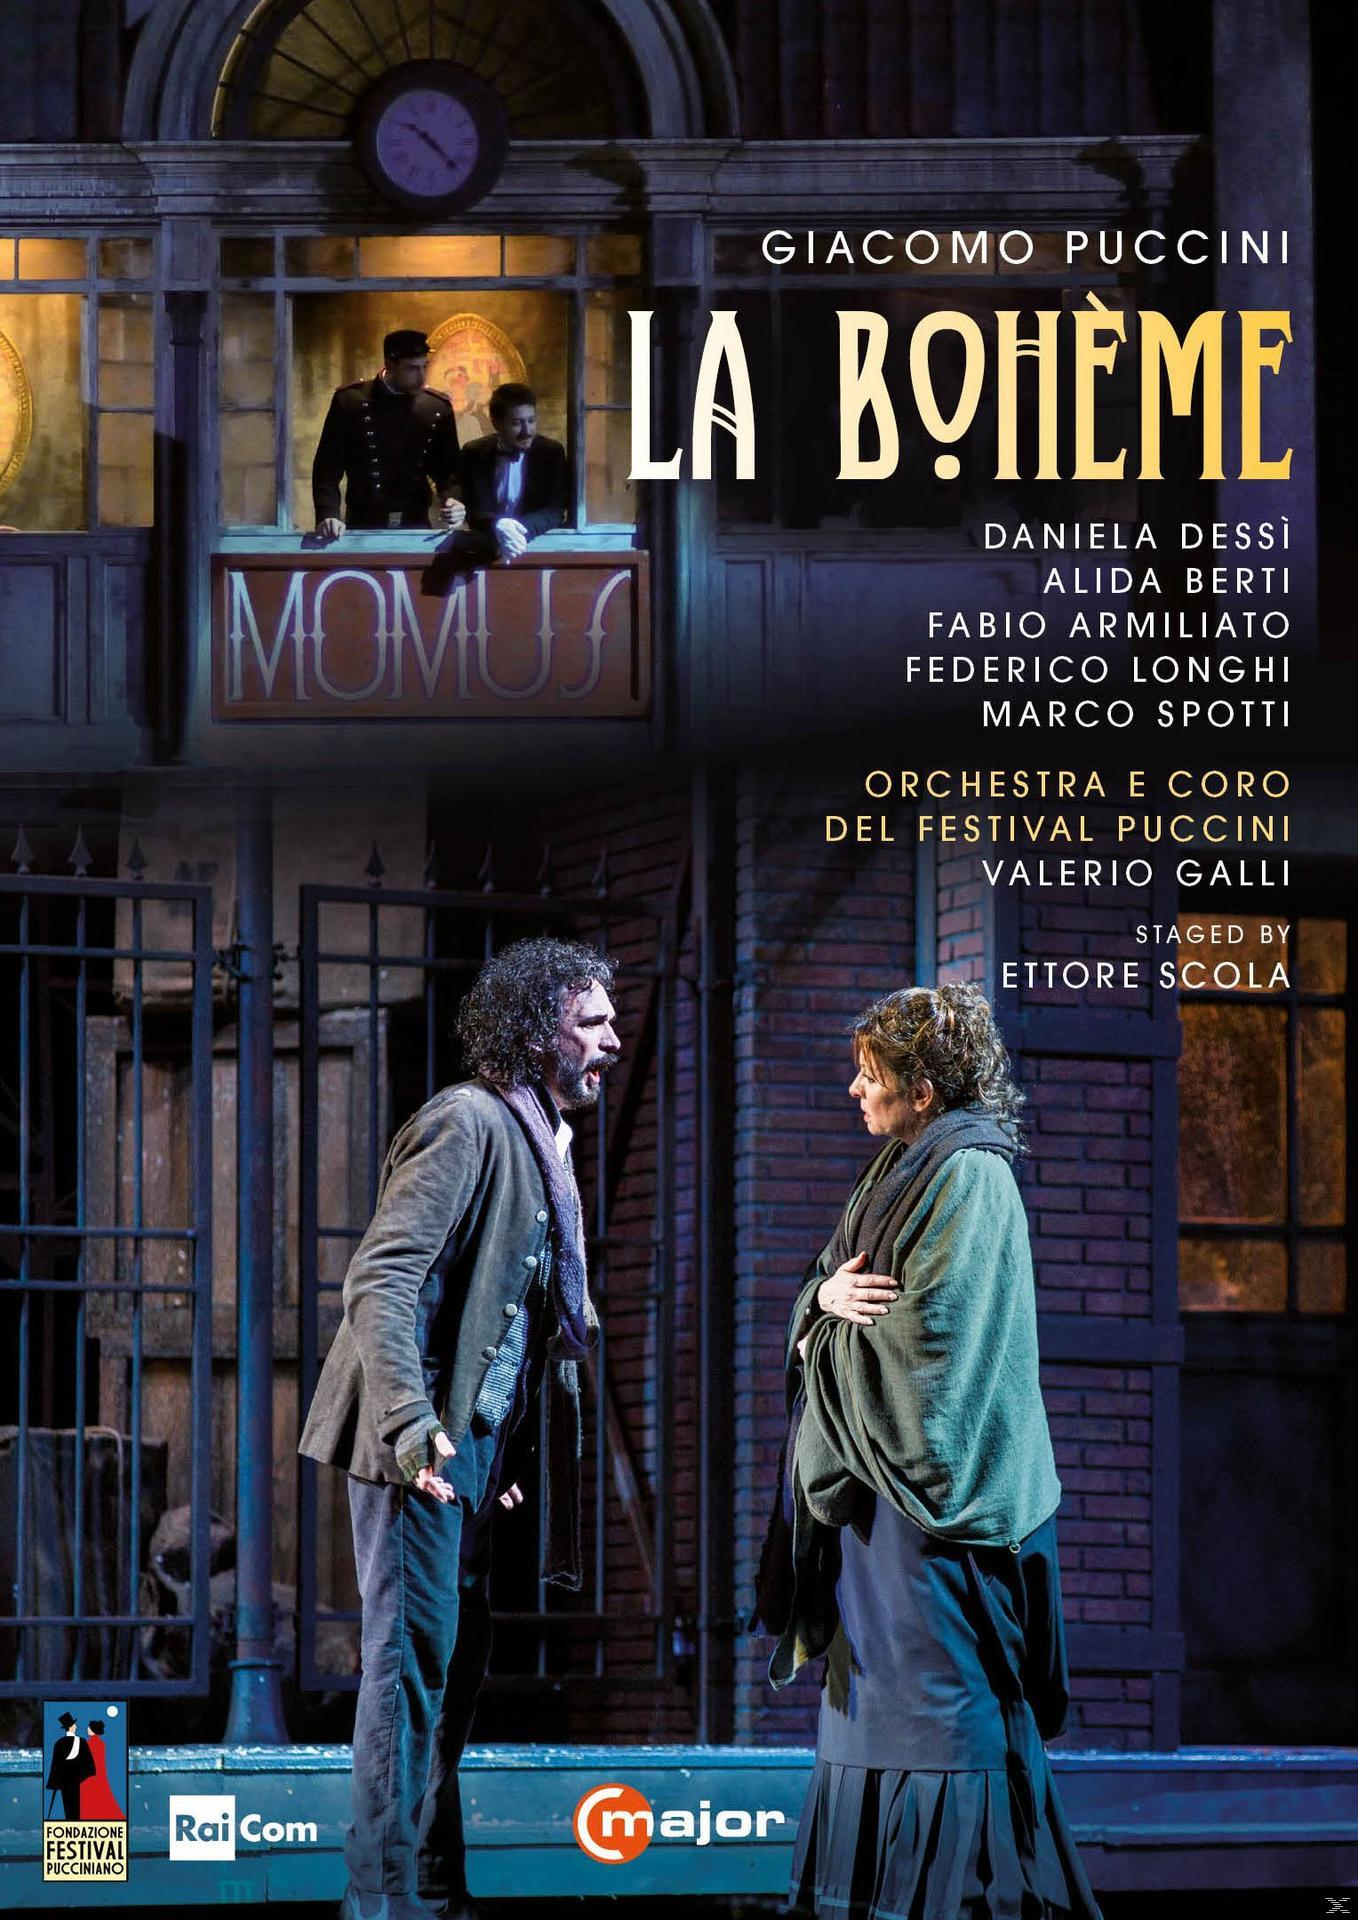 VARIOUS, Orchestra E Coro Del (DVD) Boheme - Puccini - La Festival